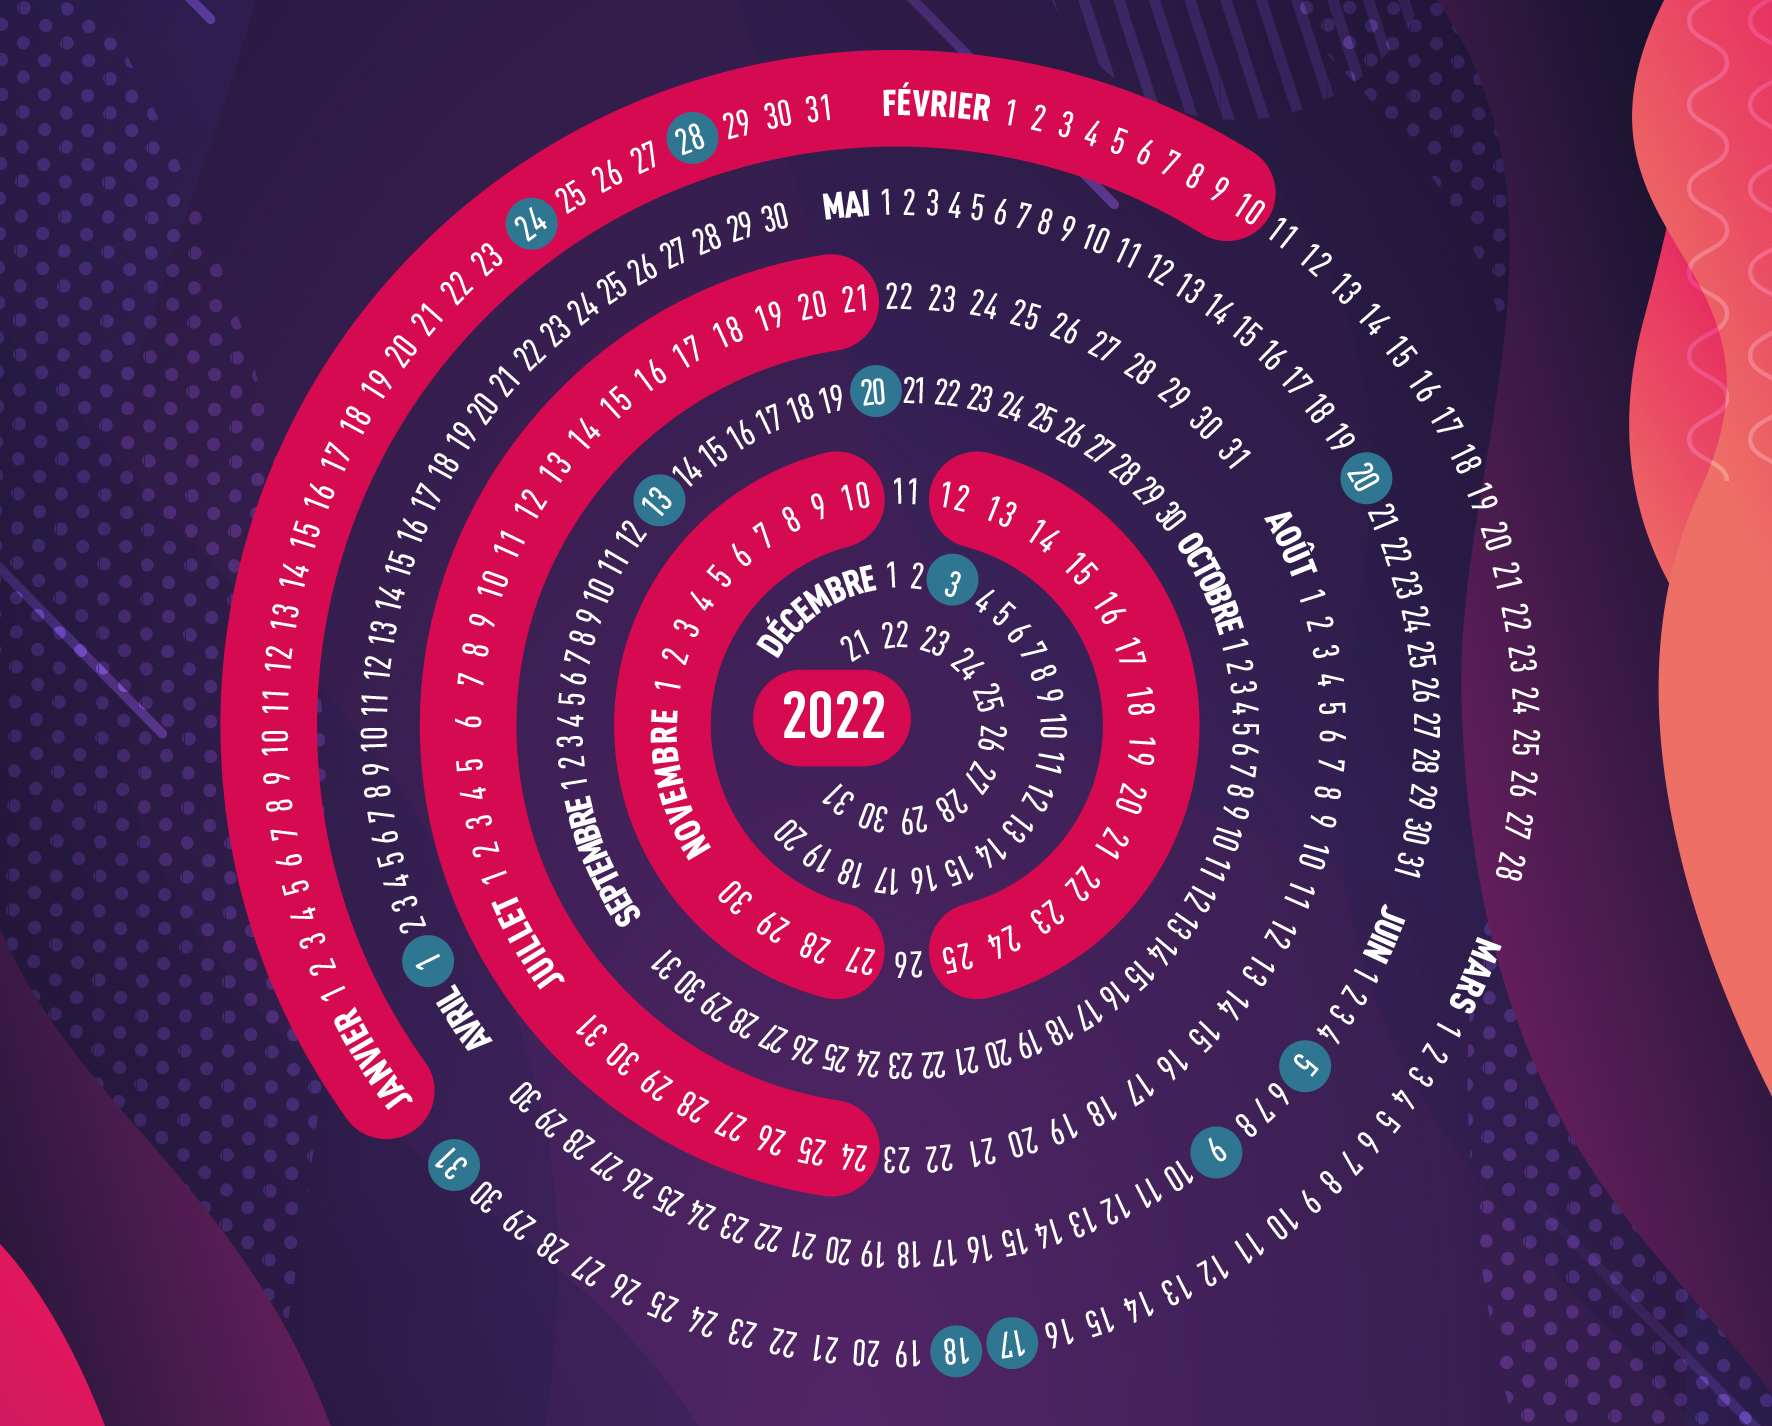 2022, l’agenda du numérique responsable des coopérateurs